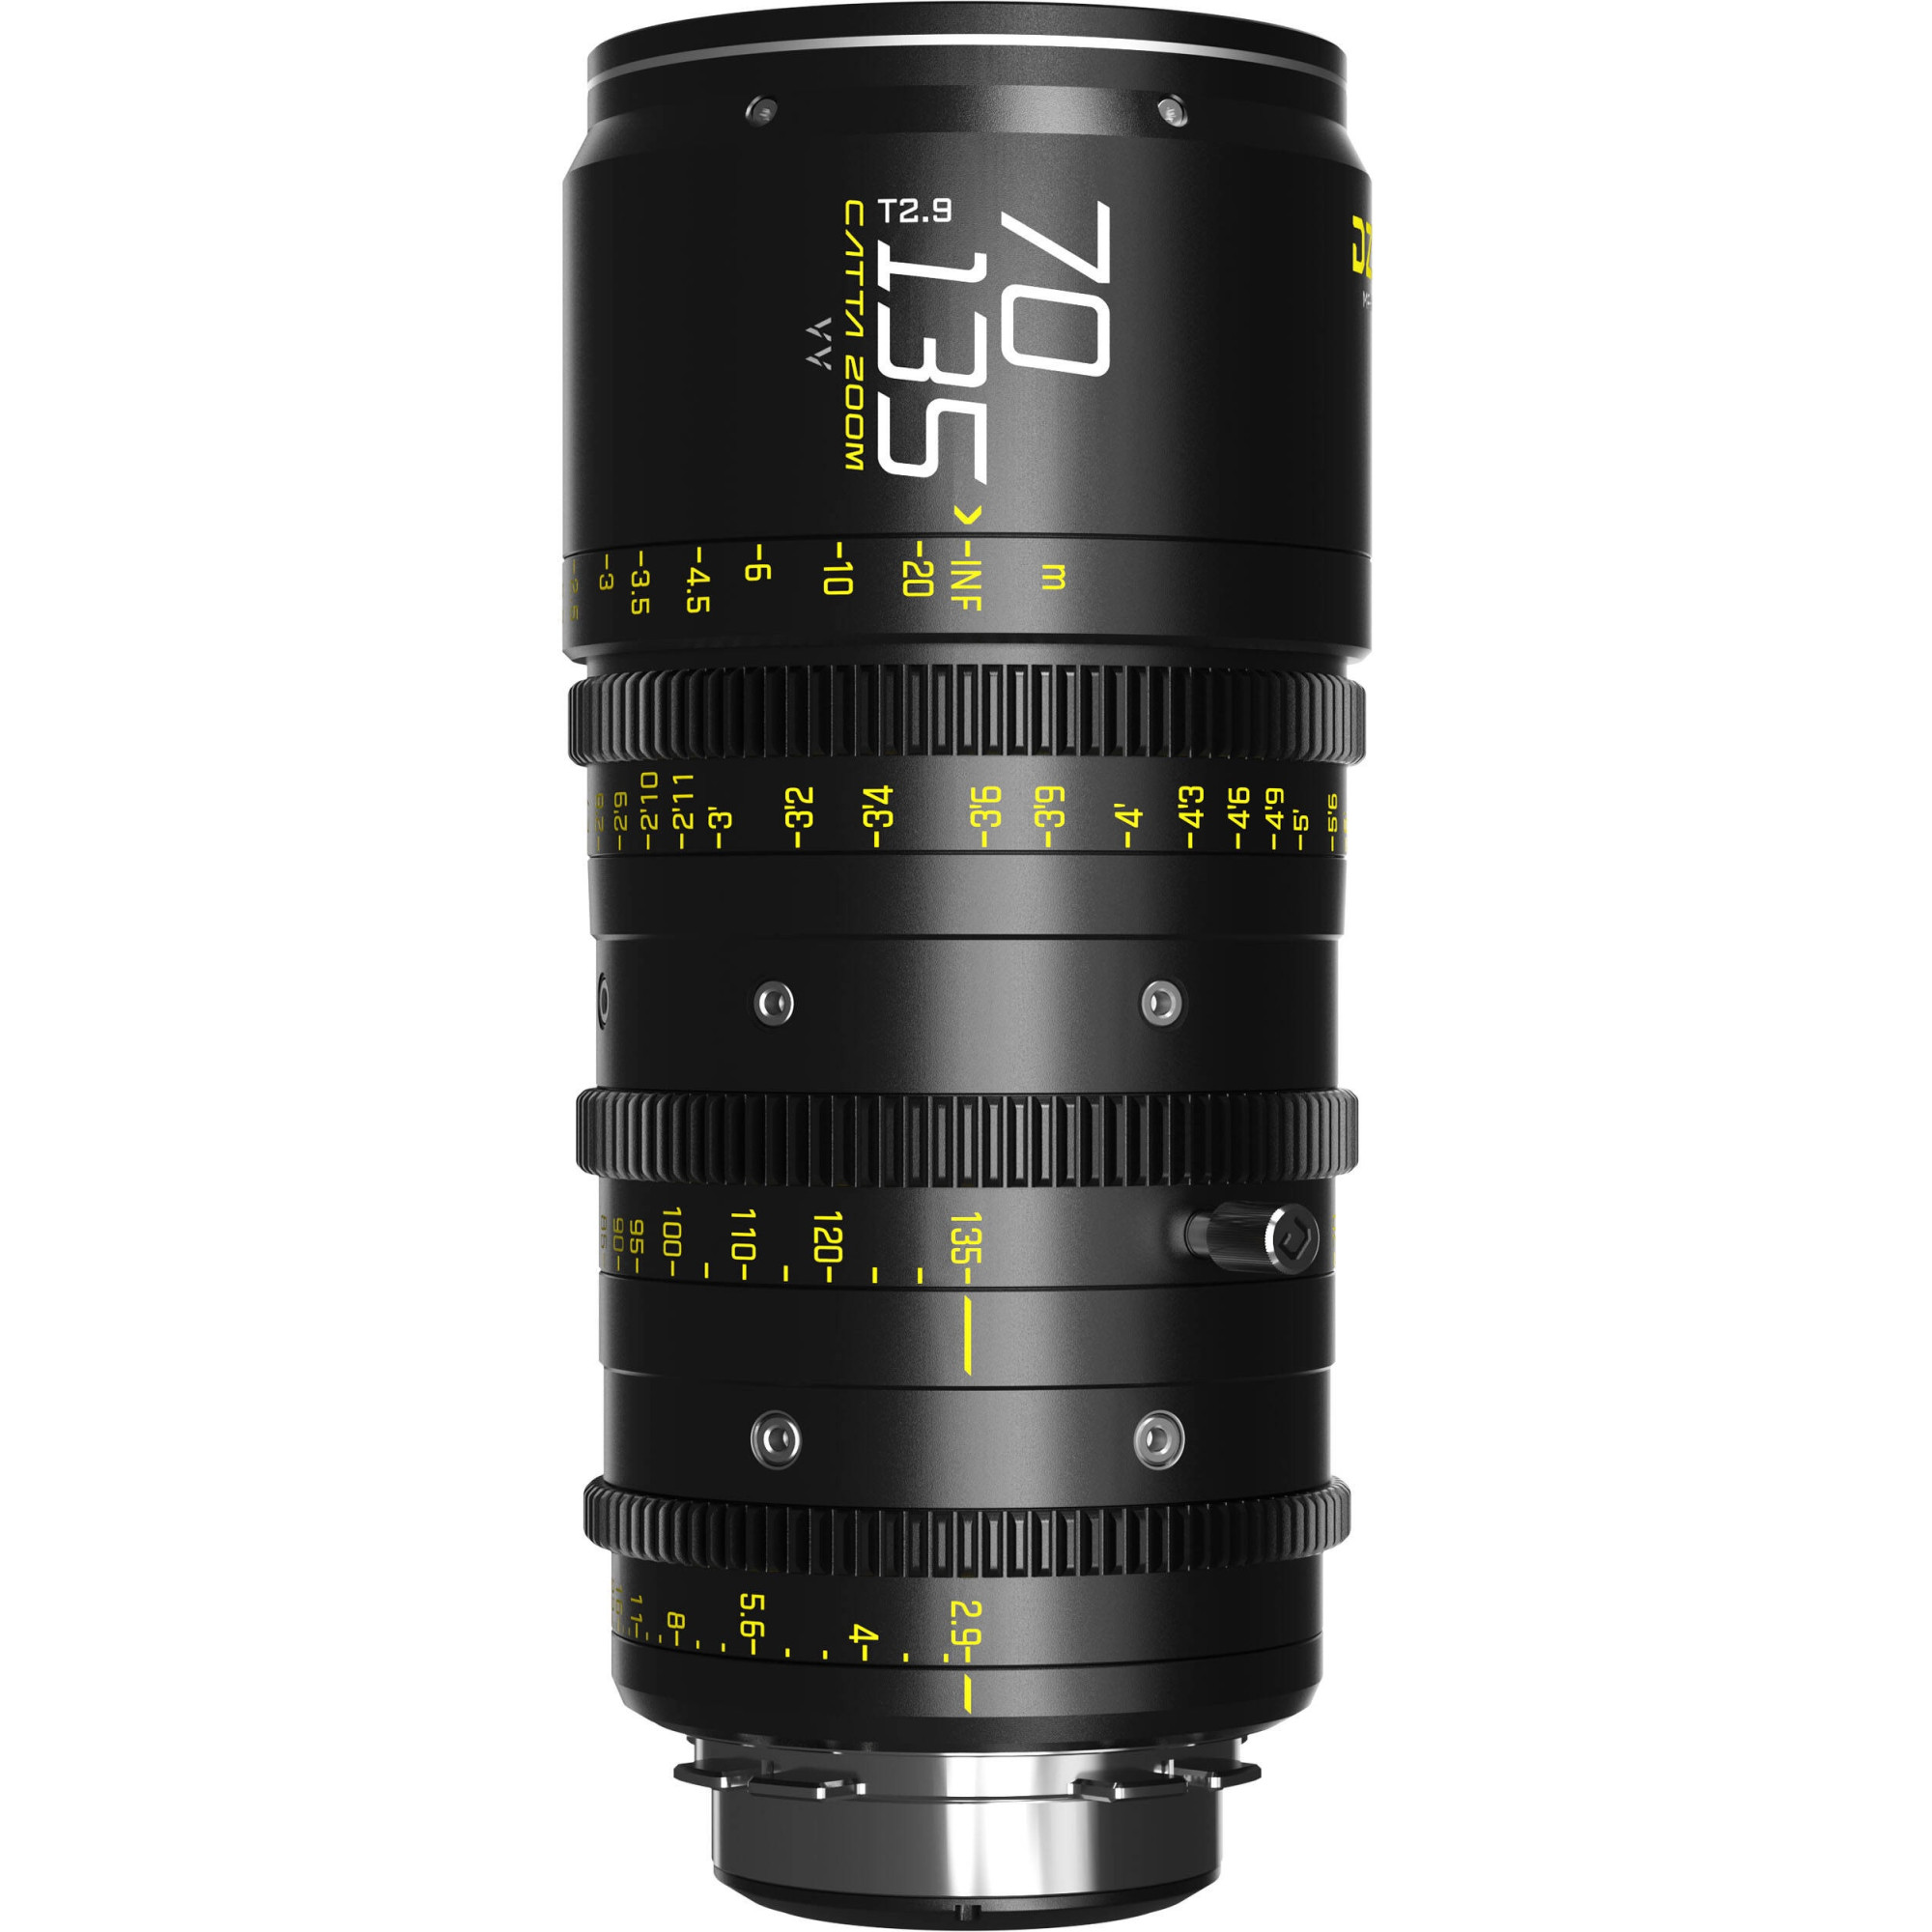 DZOFilm Catta Ace Zoom 70-135mm T2.9 Black PL & EF Mount (VV/FF) | Objectif Cinéma Plein format parfocal